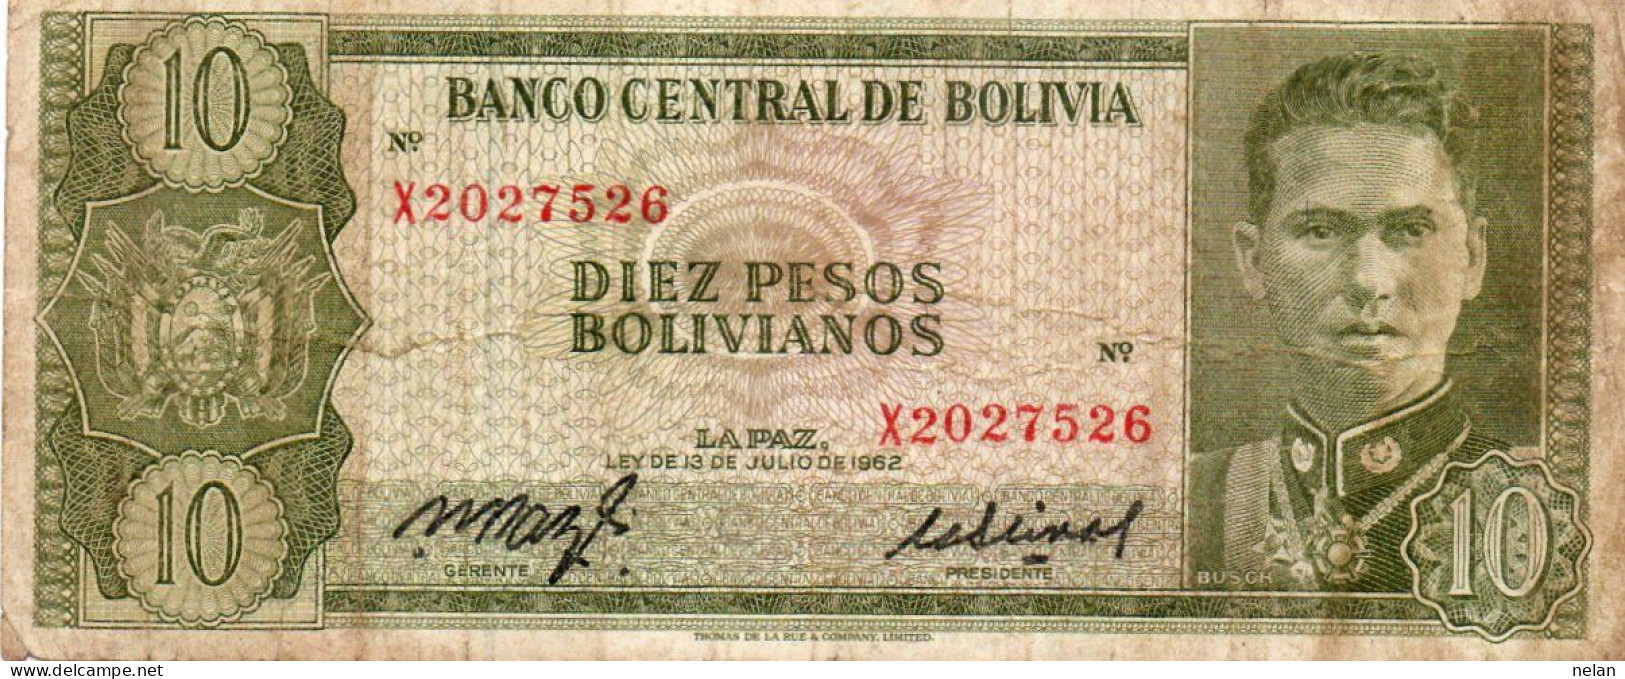 BOLIVIA 10 PESOS BOLIVIANOS 1962 - P-154a.16 CIRC. - Bolivia